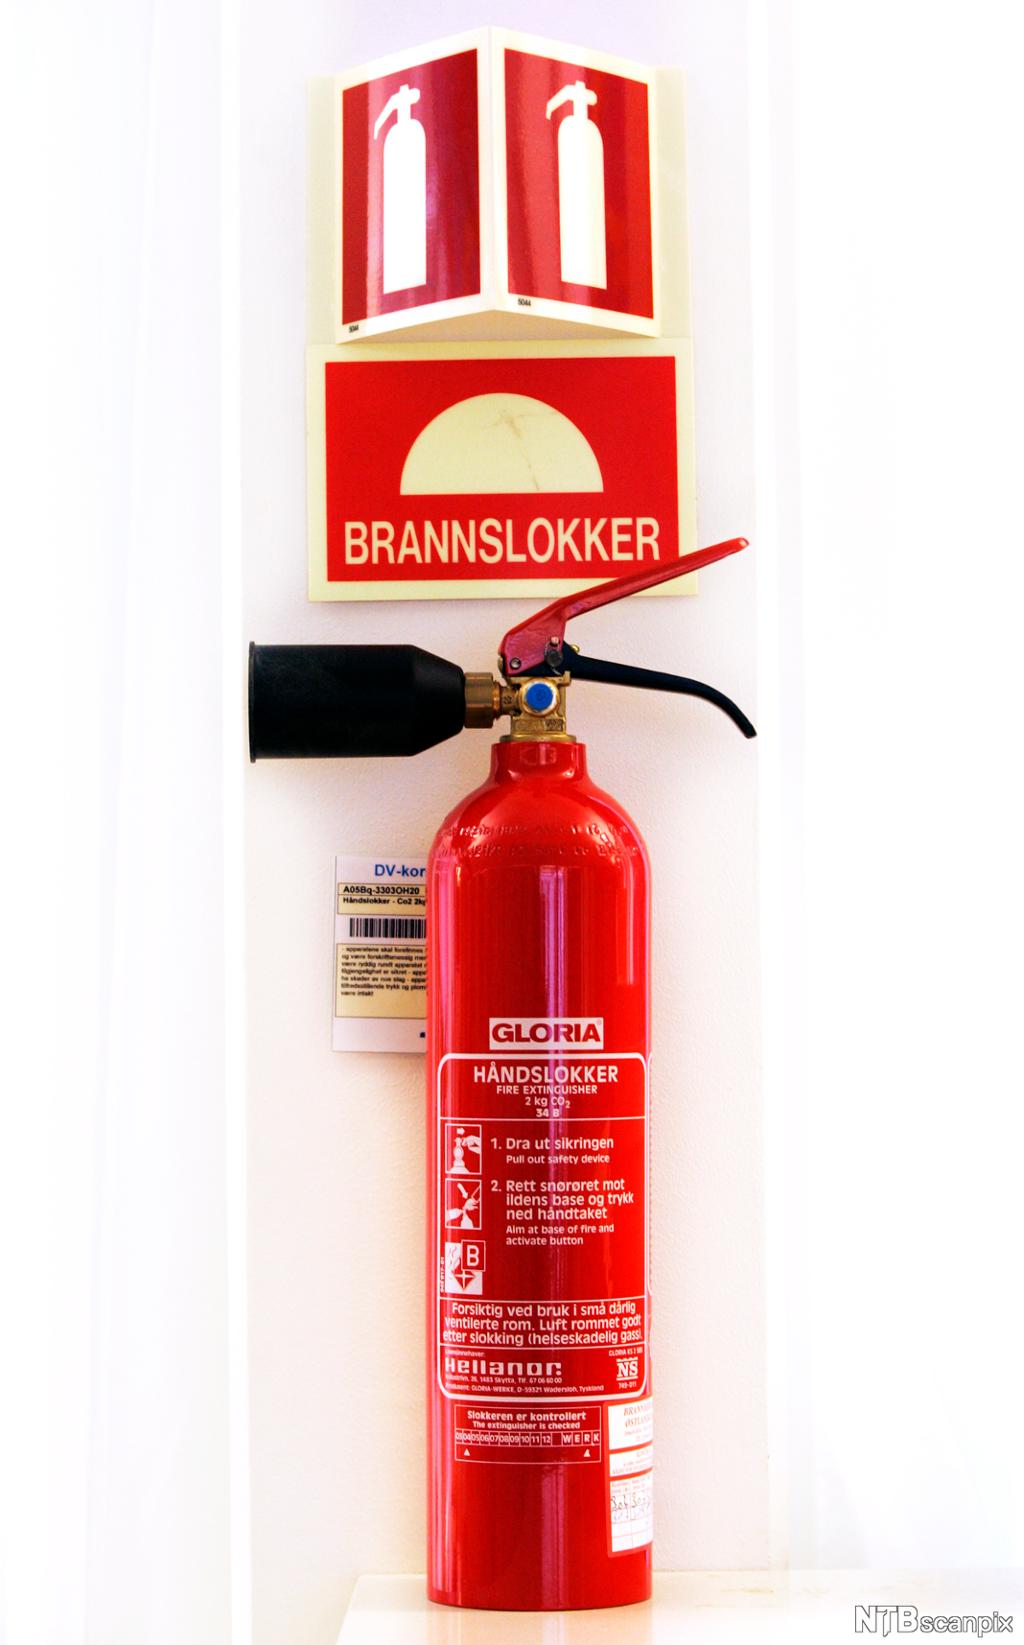 Et rødt håndslukningsapparat. Over apparatet er det ett skilt med en tegning av et brannslukningsapparat, og ett hvor det står "brannslokker". Foto.